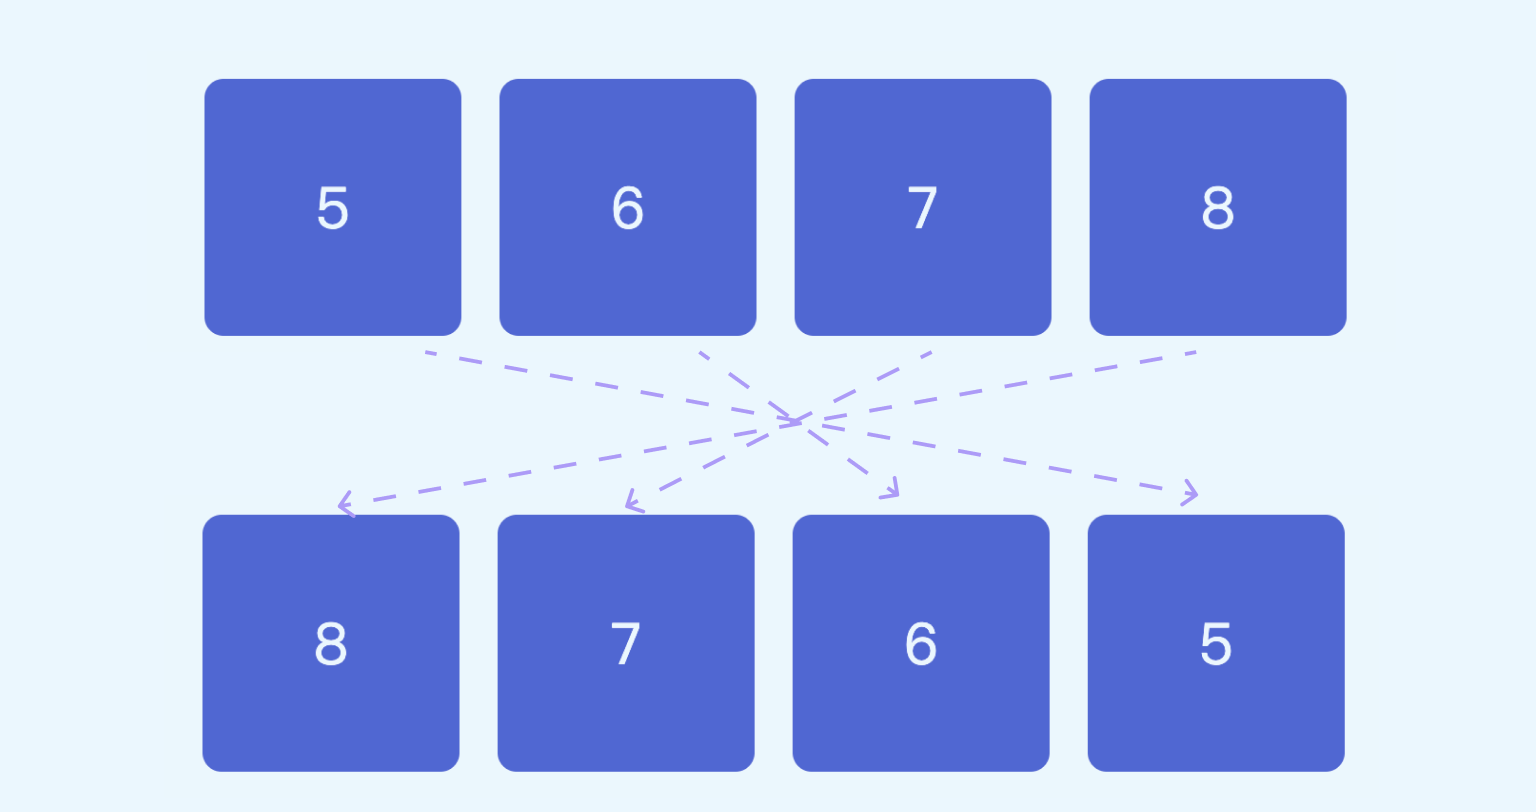 CSS 如何改变网格布局偶数行的排序？